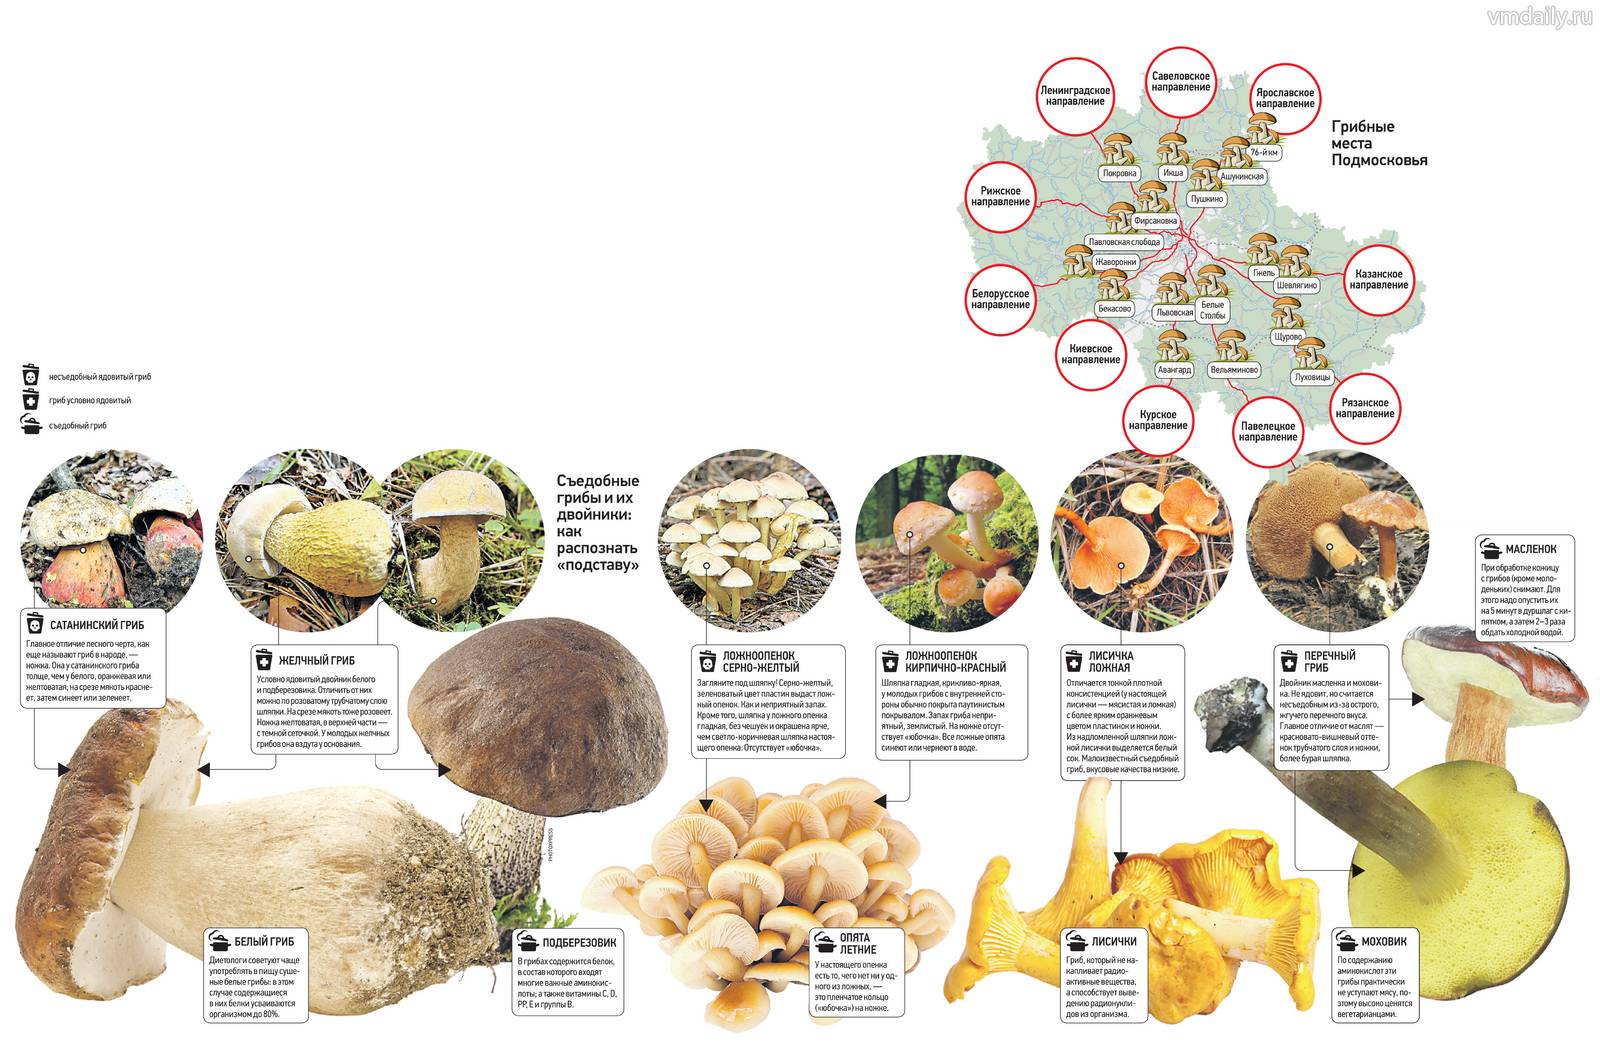 Съедобные грибы в подмосковье. разновидности и где их искать- советы +фото ивидео